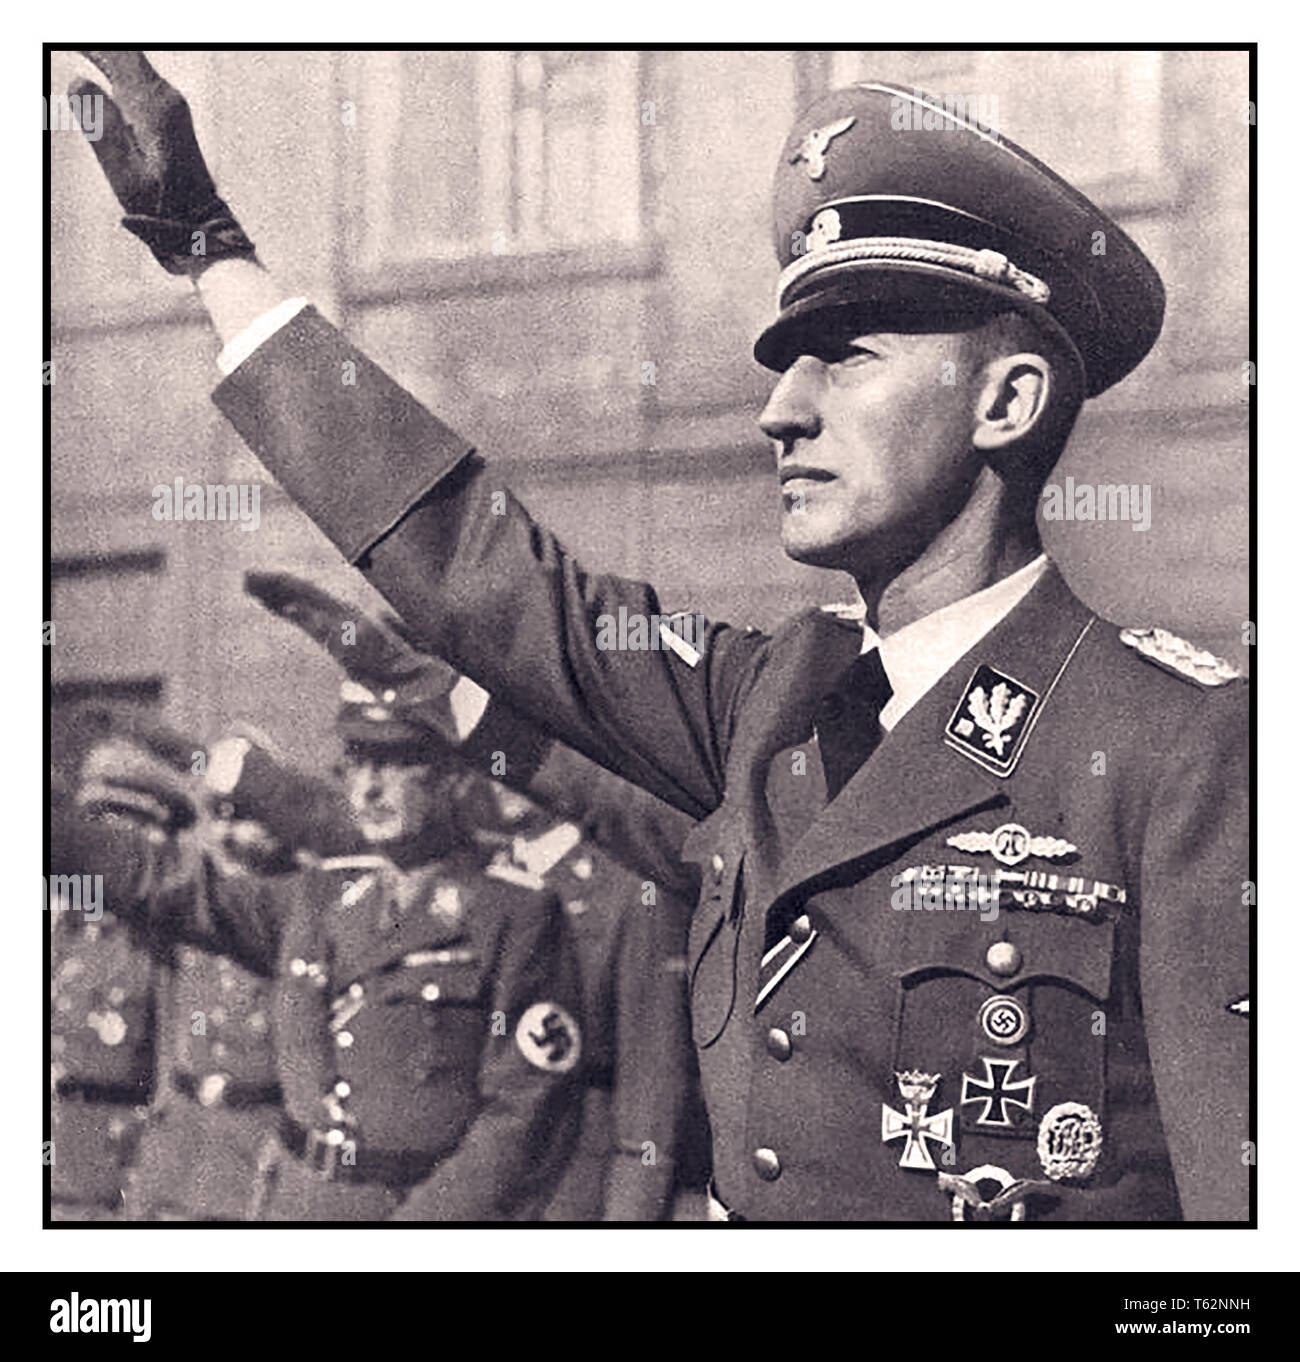 WW 2 Reinhard Heydrich 1940 Schutzstaffel (SS)-Obergruppenführer und General der Polizei Reinhard Heydrich, Chef der Reichssicherheitshauptamt (Reich Main Security Office, RSHA), die kombinierte Sicherheit Dienstleistungen von Nazi-deutschland und handeln Reichsprotektor des Protektorates Böhmen und Mähren Heydrich war einer der mächtigsten Männer im nationalsozialistischen Deutschland und eine wichtige Figur in dem Aufstieg von Adolf Hitler; er war die "endgültige Lösung (Holocaust) der Judenfrage" in Europa war er zu Recht von vielen verabscheut und wurde ermordet durch extrem schöne Tschechische Exil Soldaten. Stockfoto